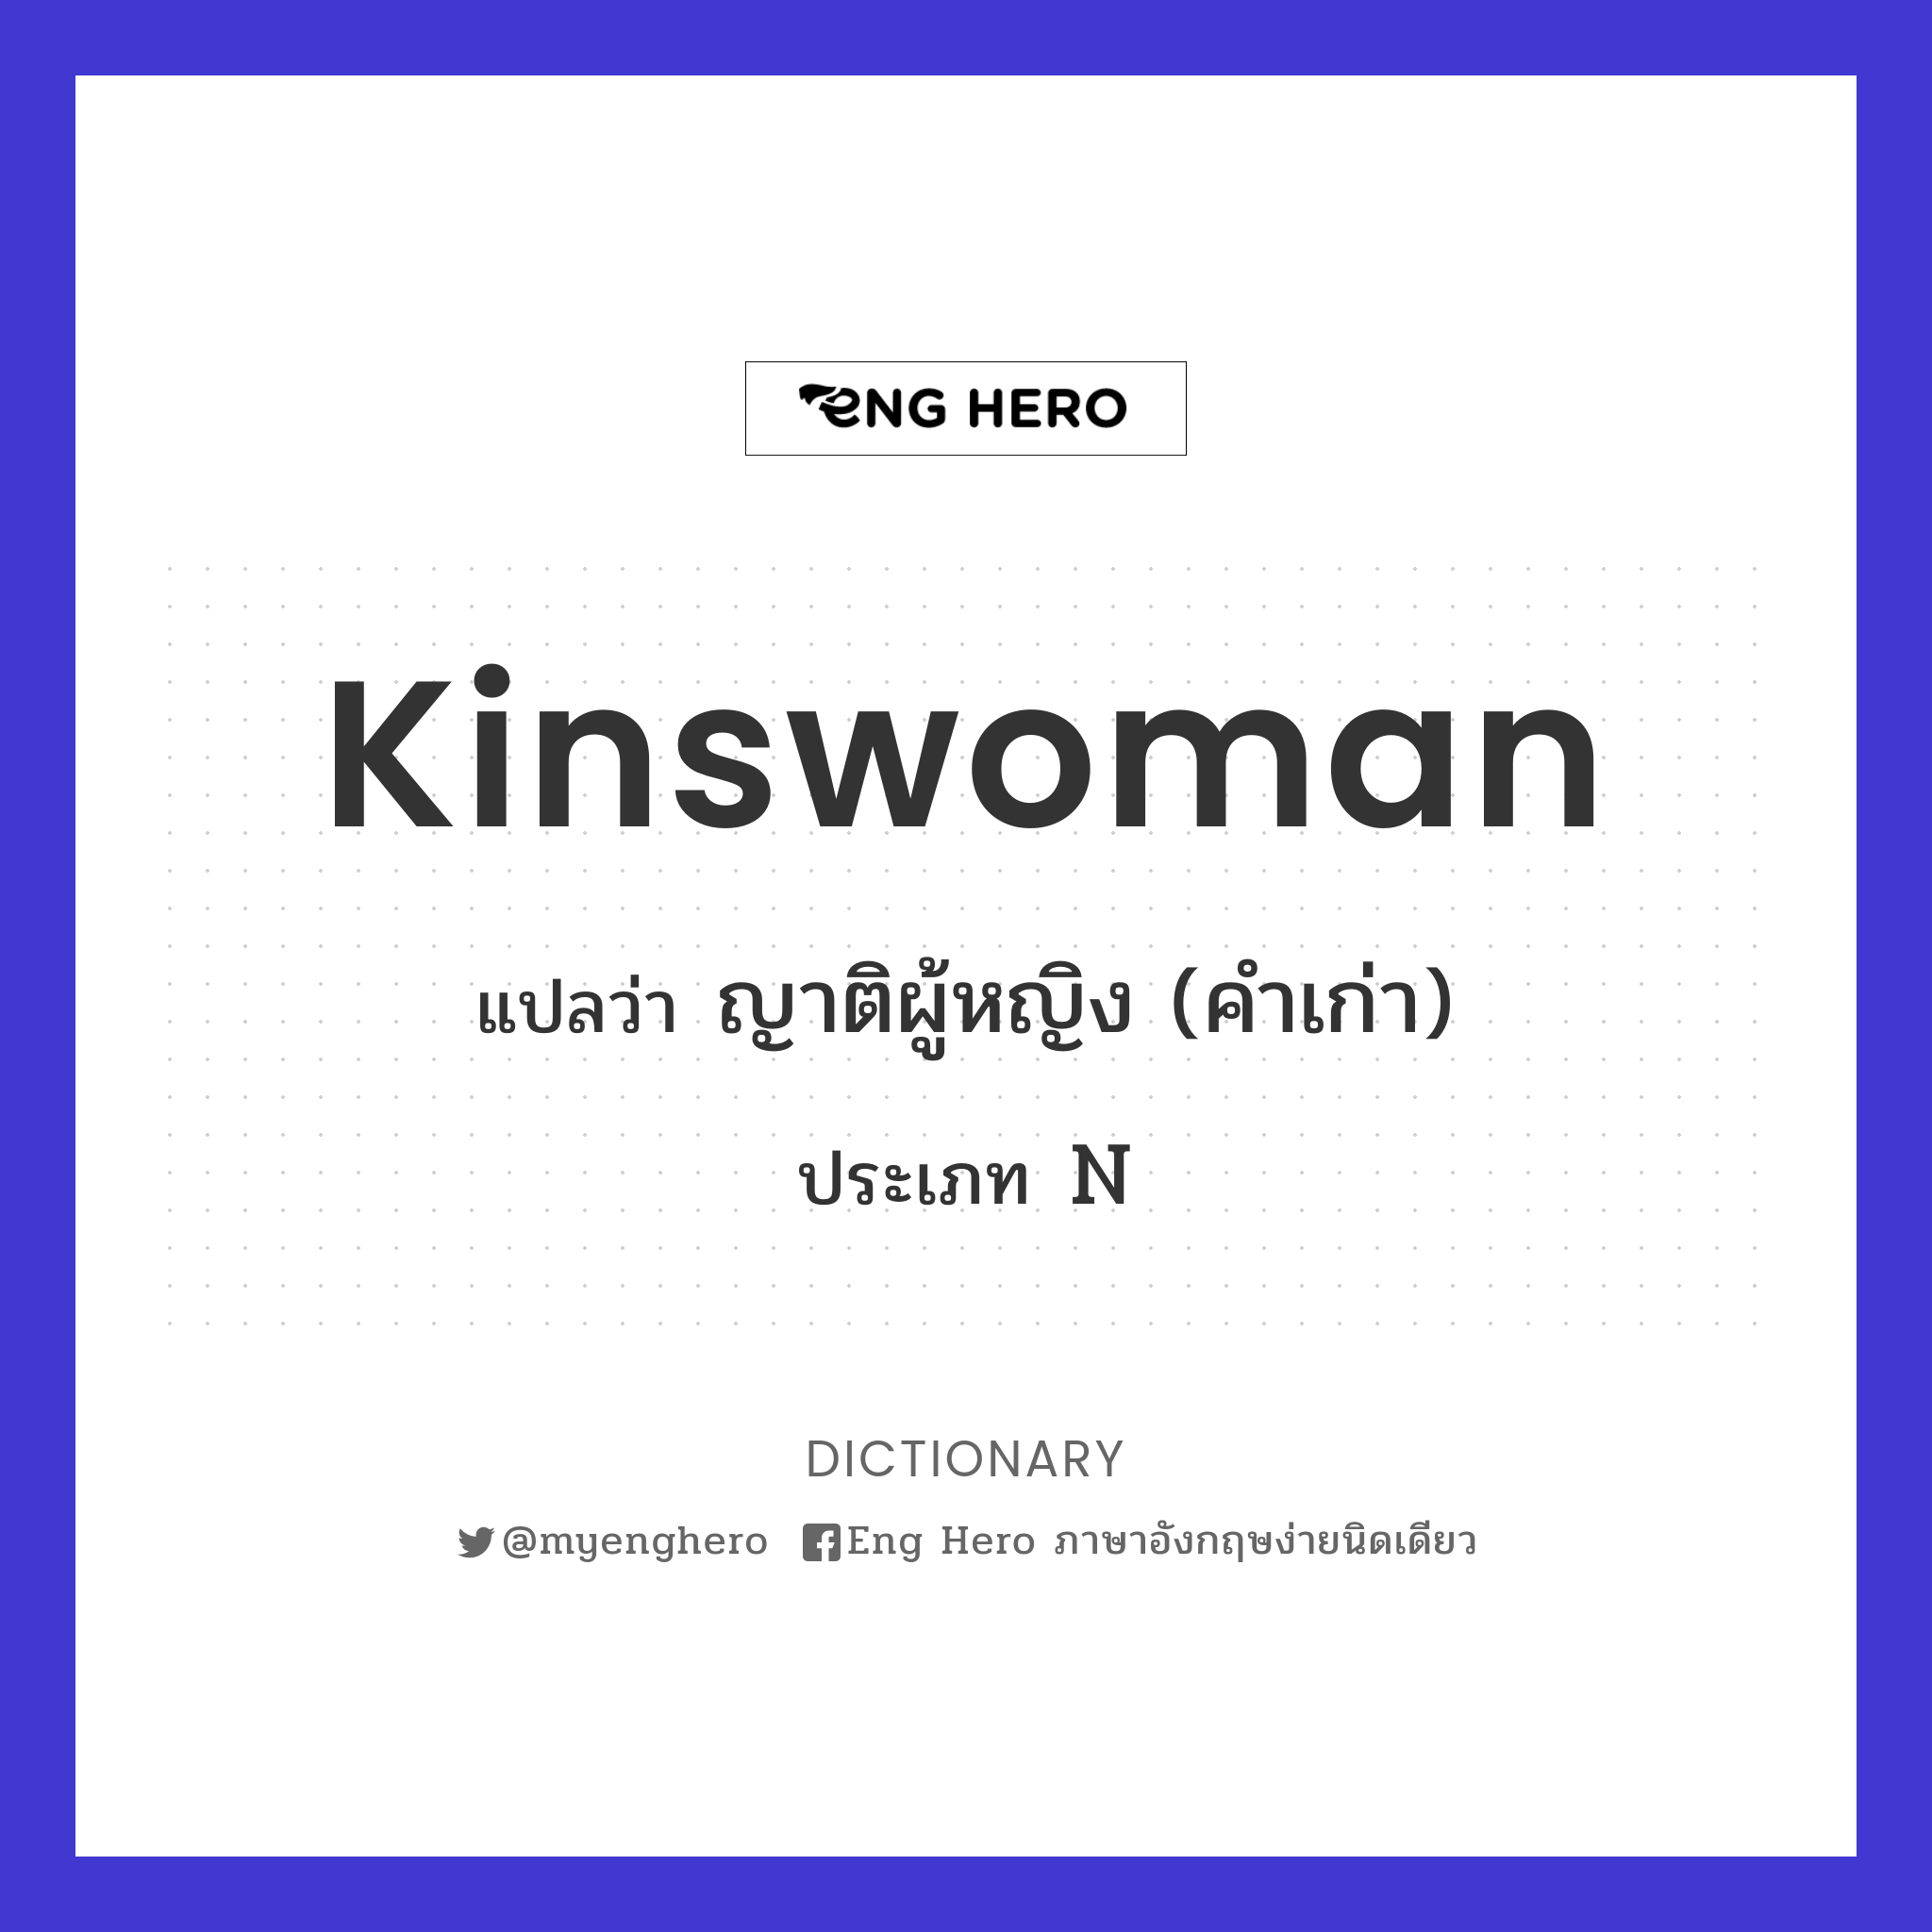 kinswoman